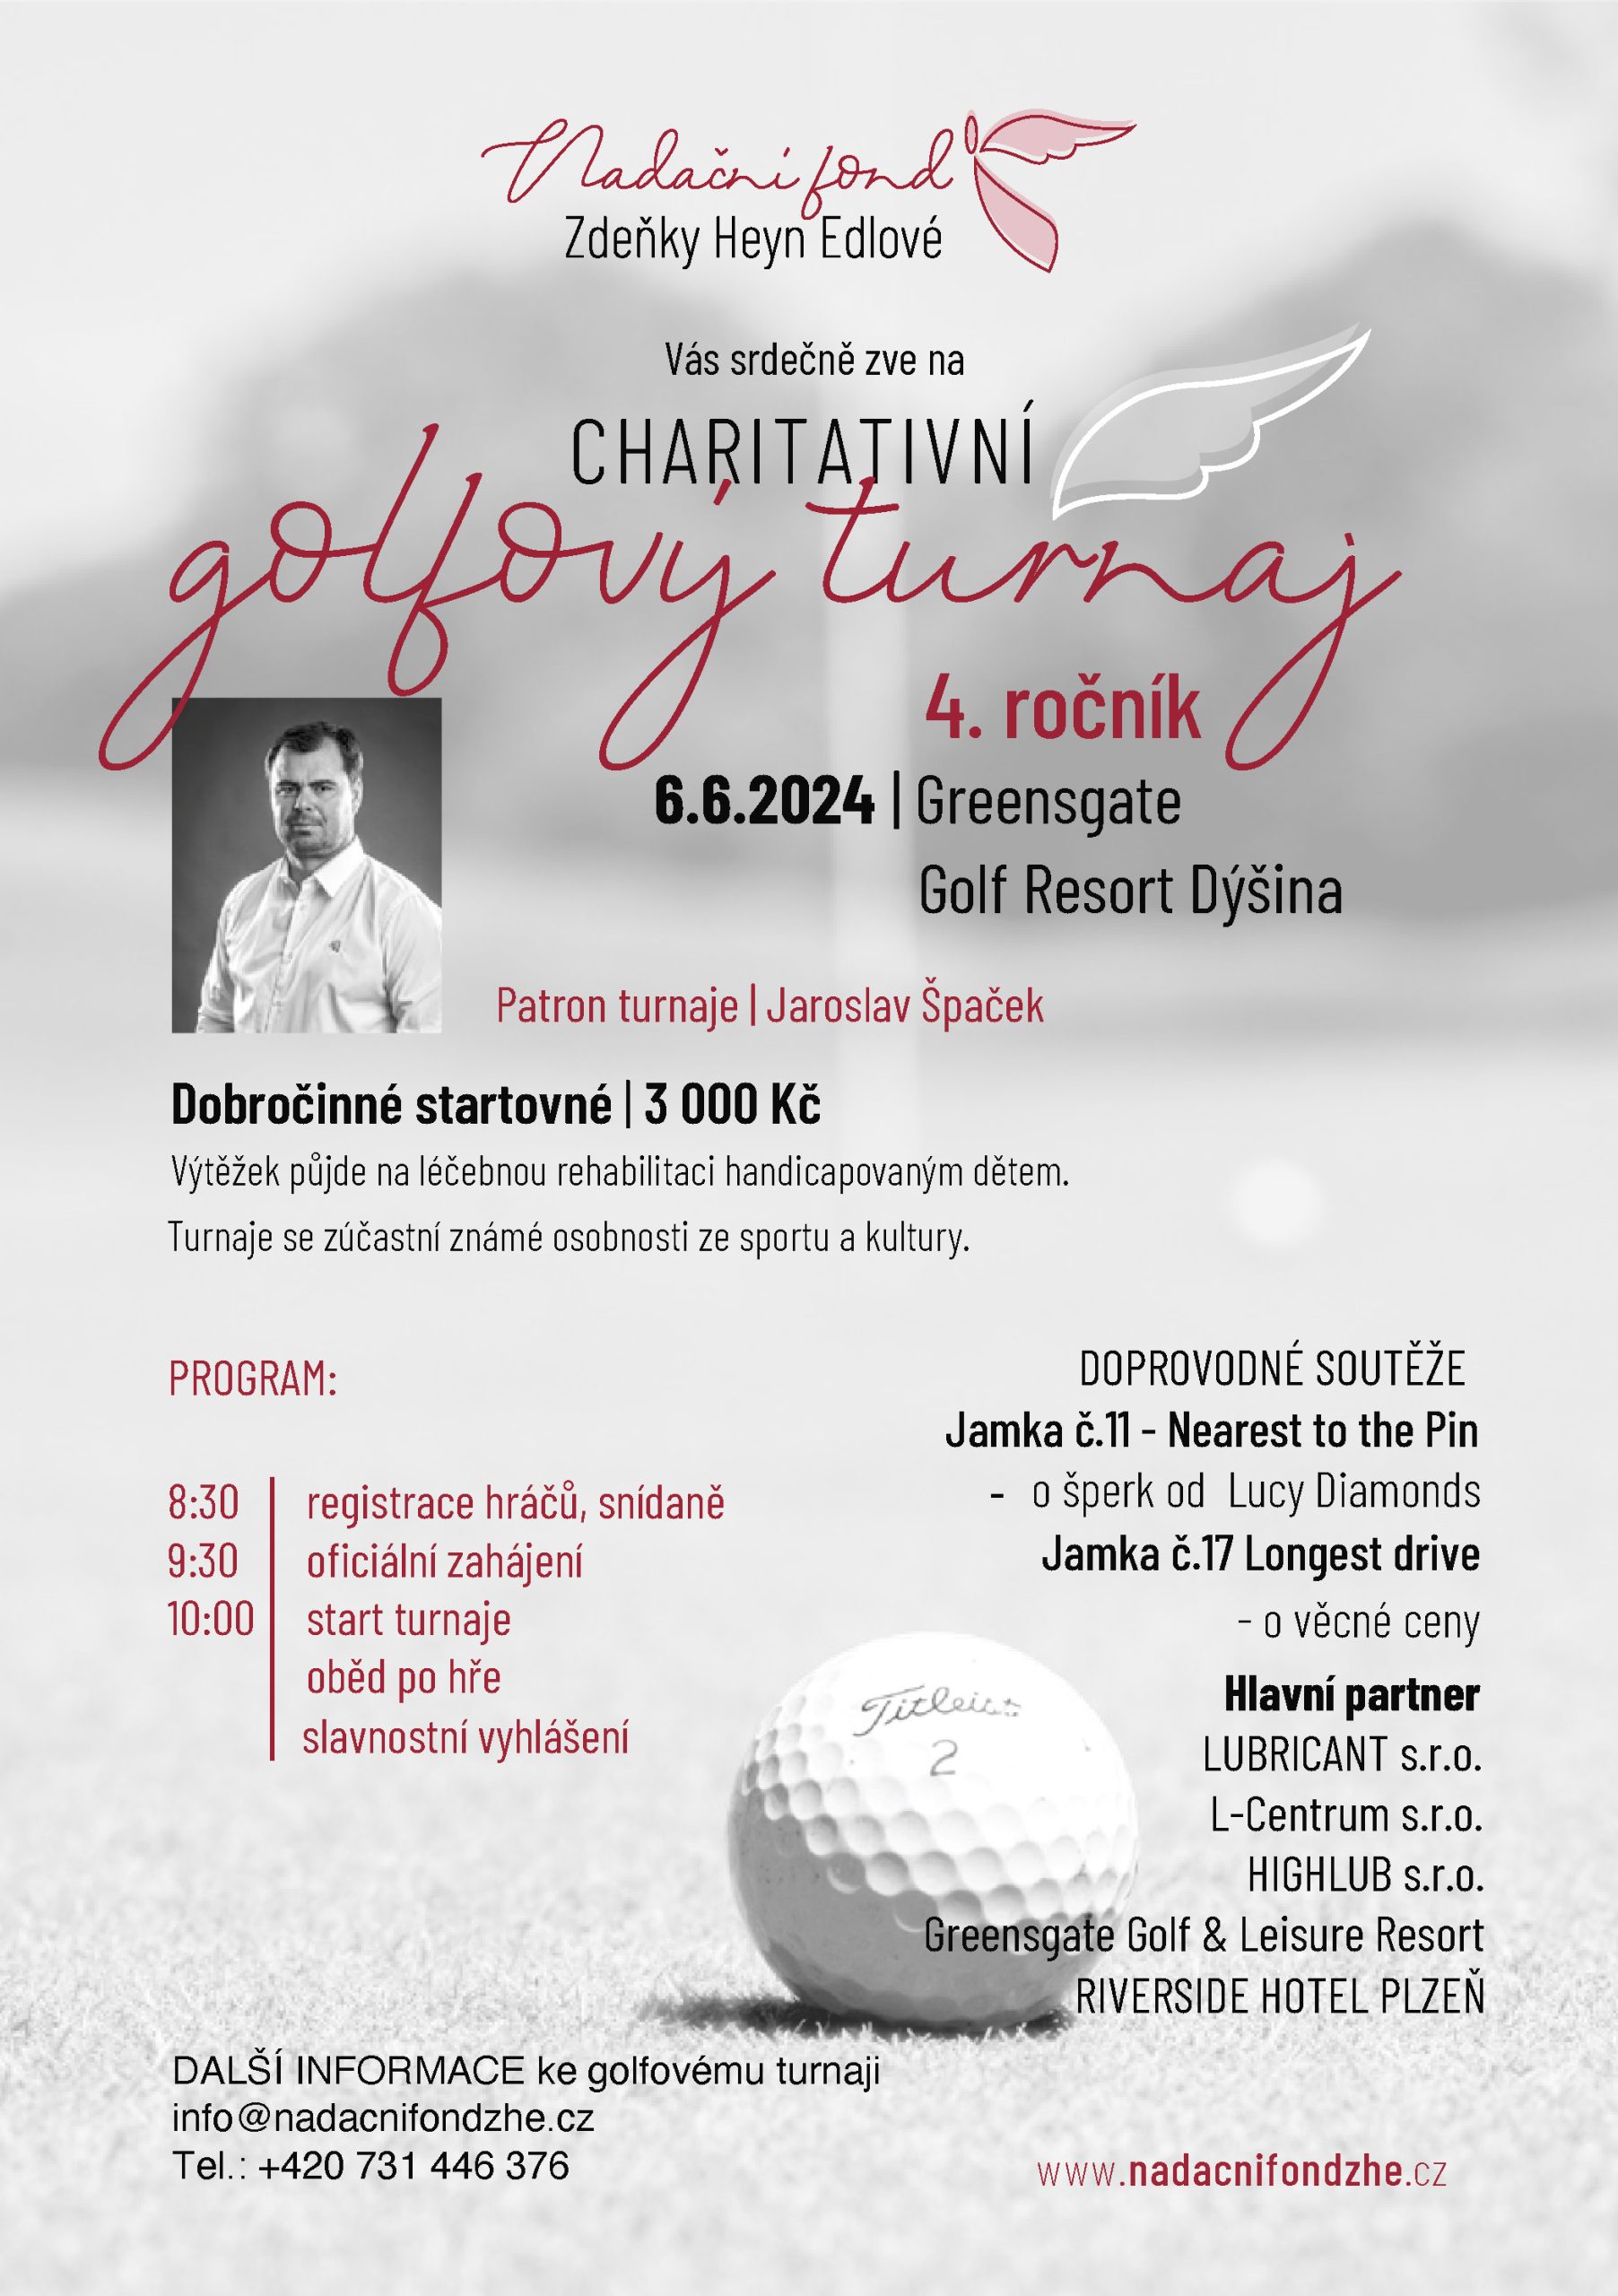 4.ročník charitativního golfového turnaje v resortu Dýšiná u Plzně 6.6.2024